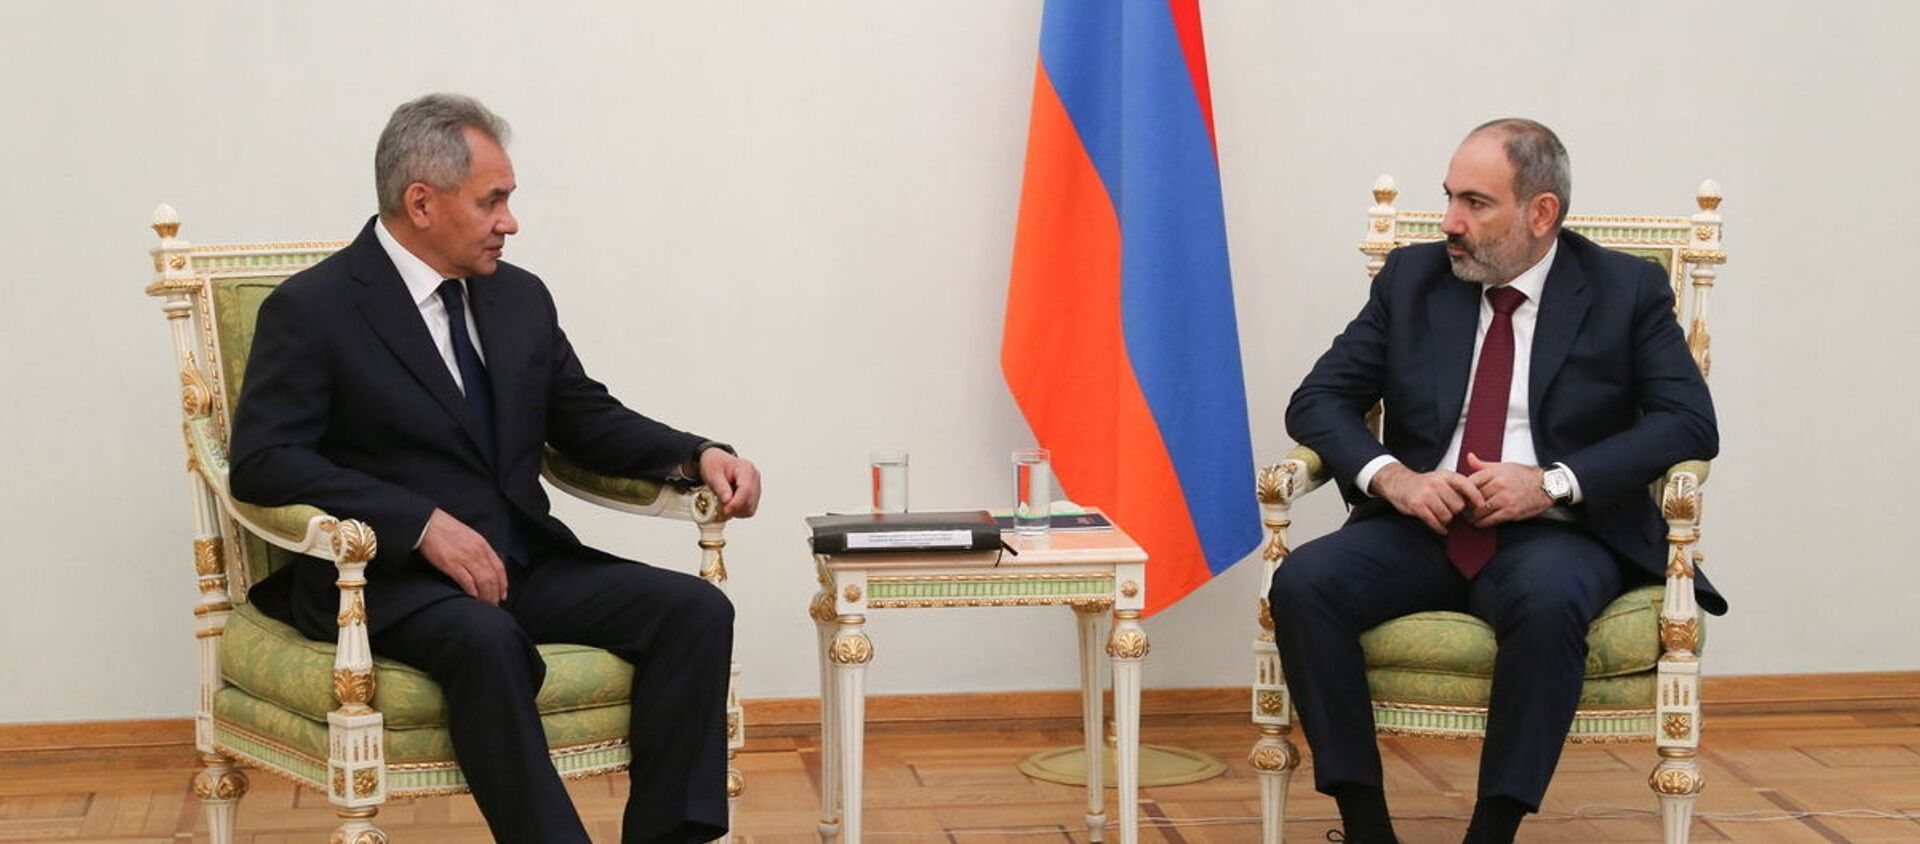 Bộ trưởng Quốc phòng Nga Sergei Shoigu tại cuộc gặp với Thủ tướng Armenia Nikol Pashinyan ở Yerevan, (Armenia). - Sputnik Việt Nam, 1920, 21.11.2020